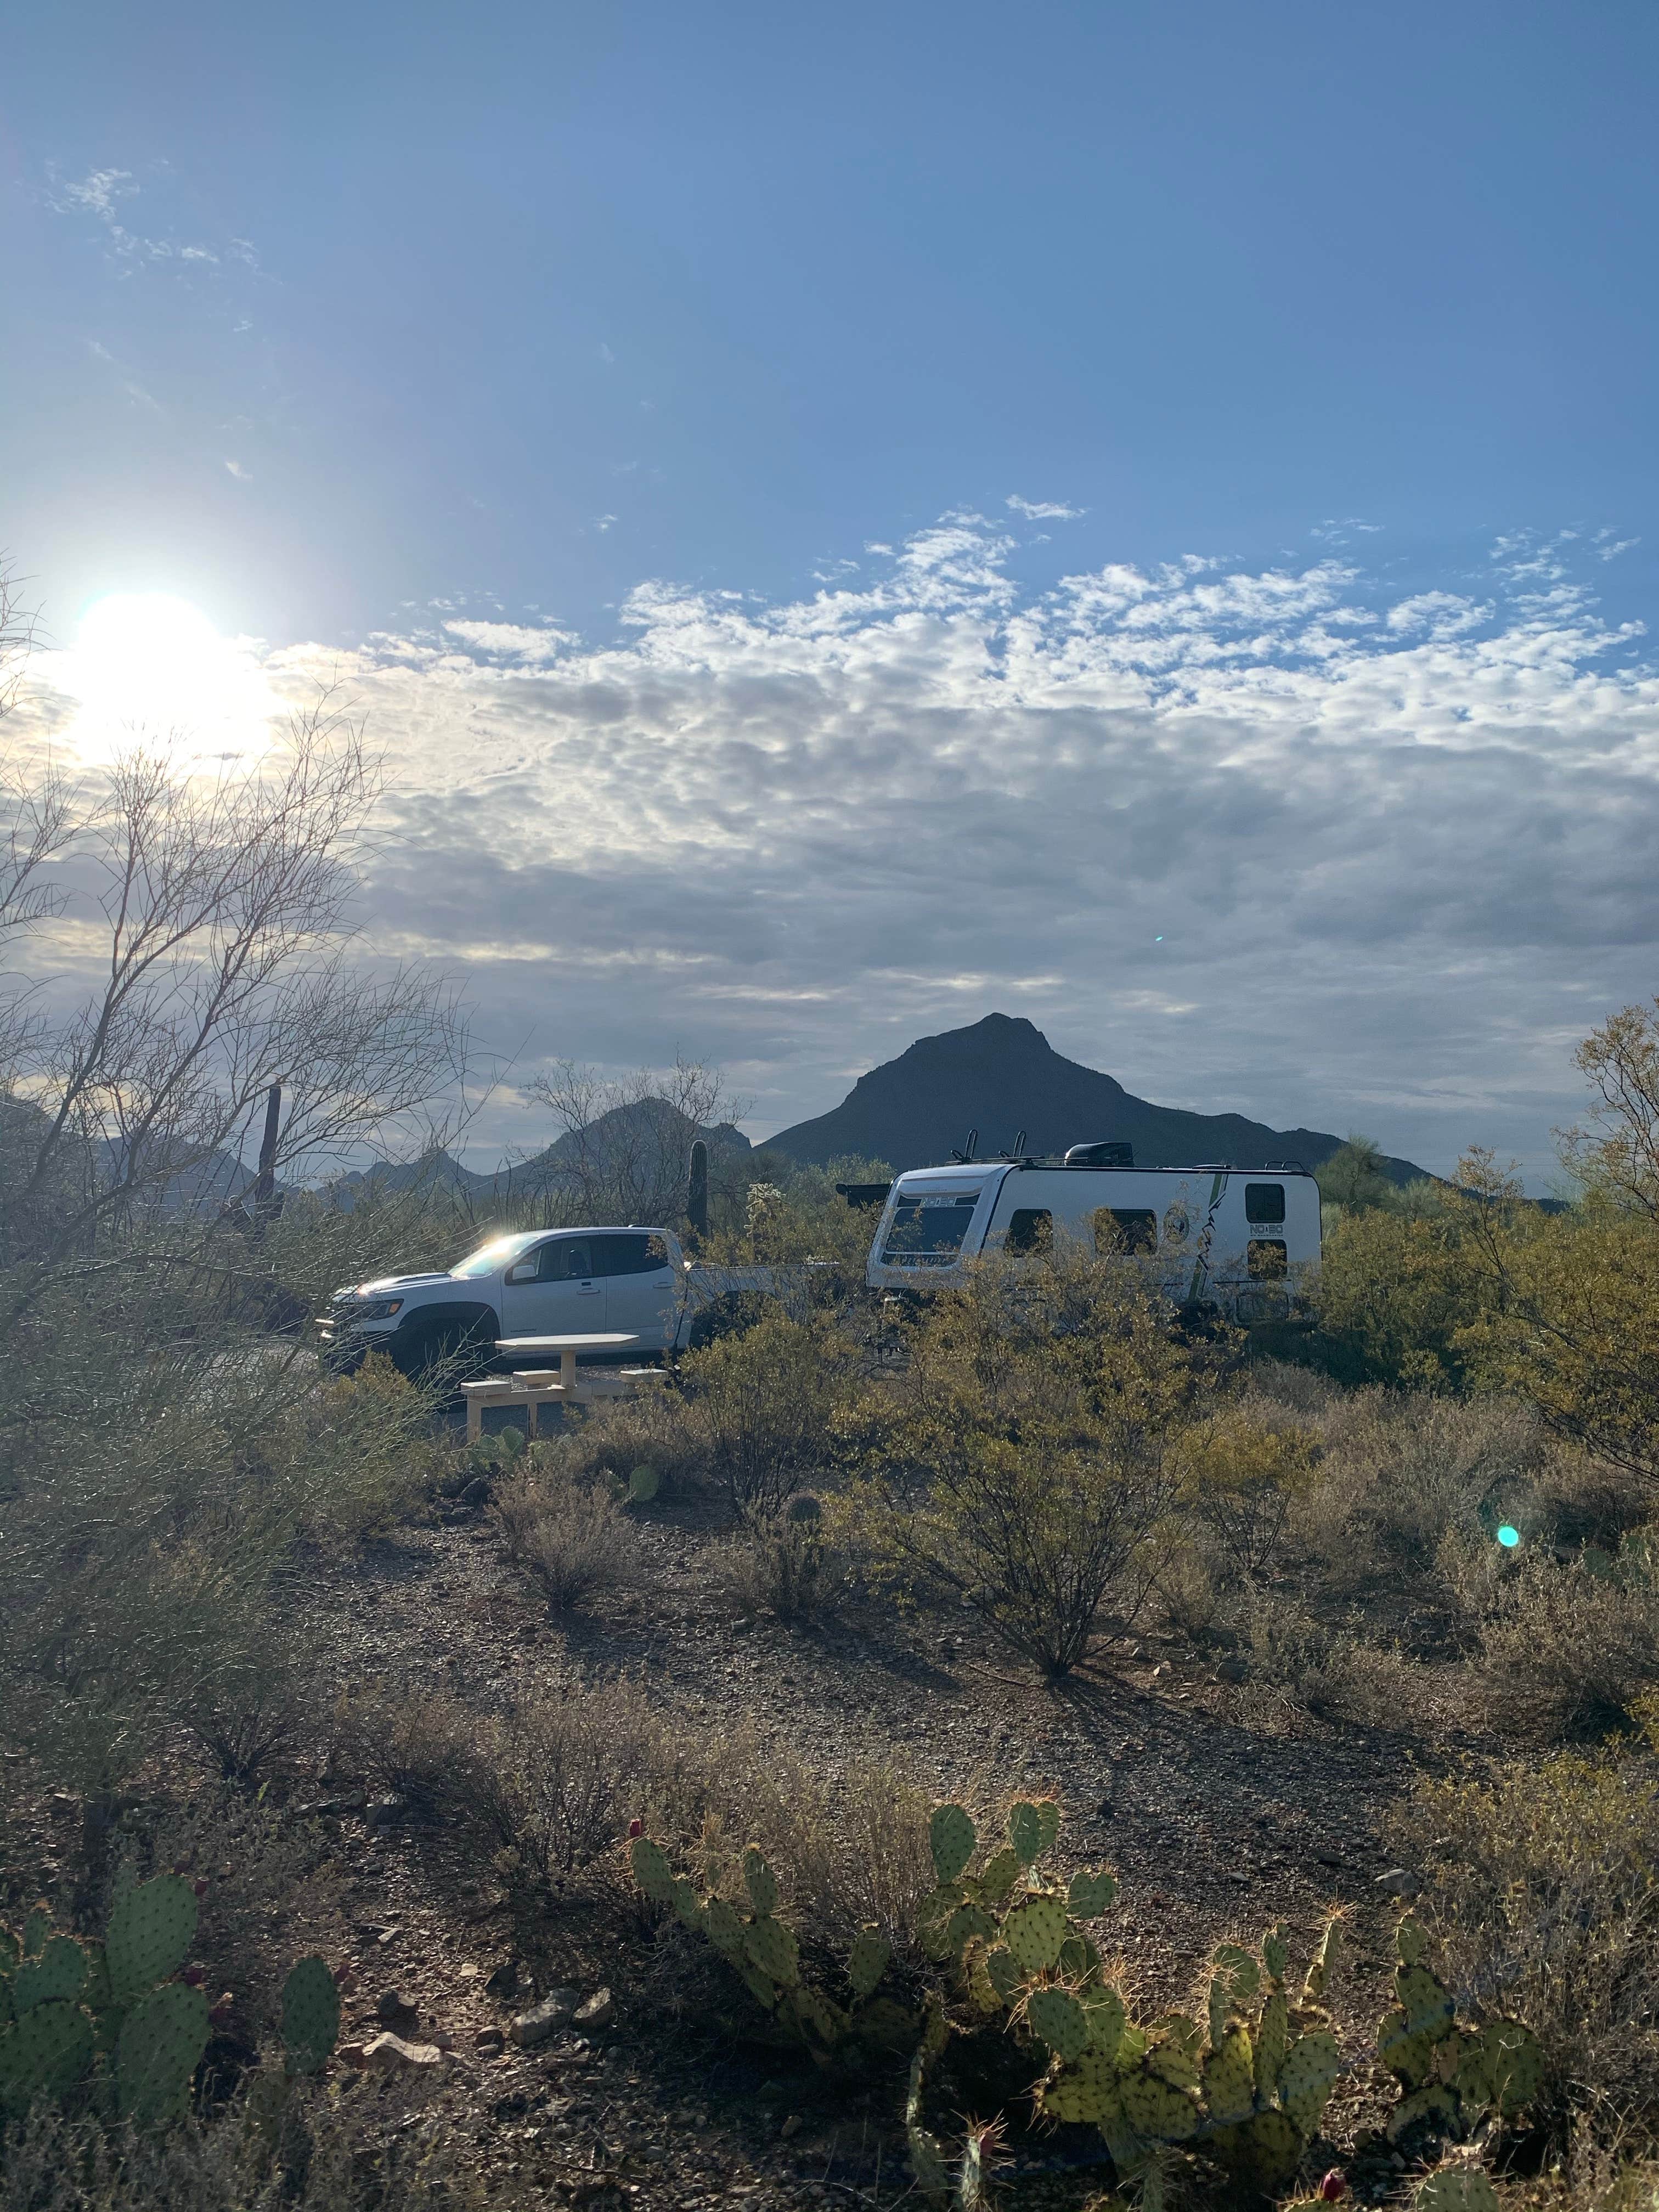 Tucson morning at Gilbert Ray’s. Camping spot H24 July 25, 2020.